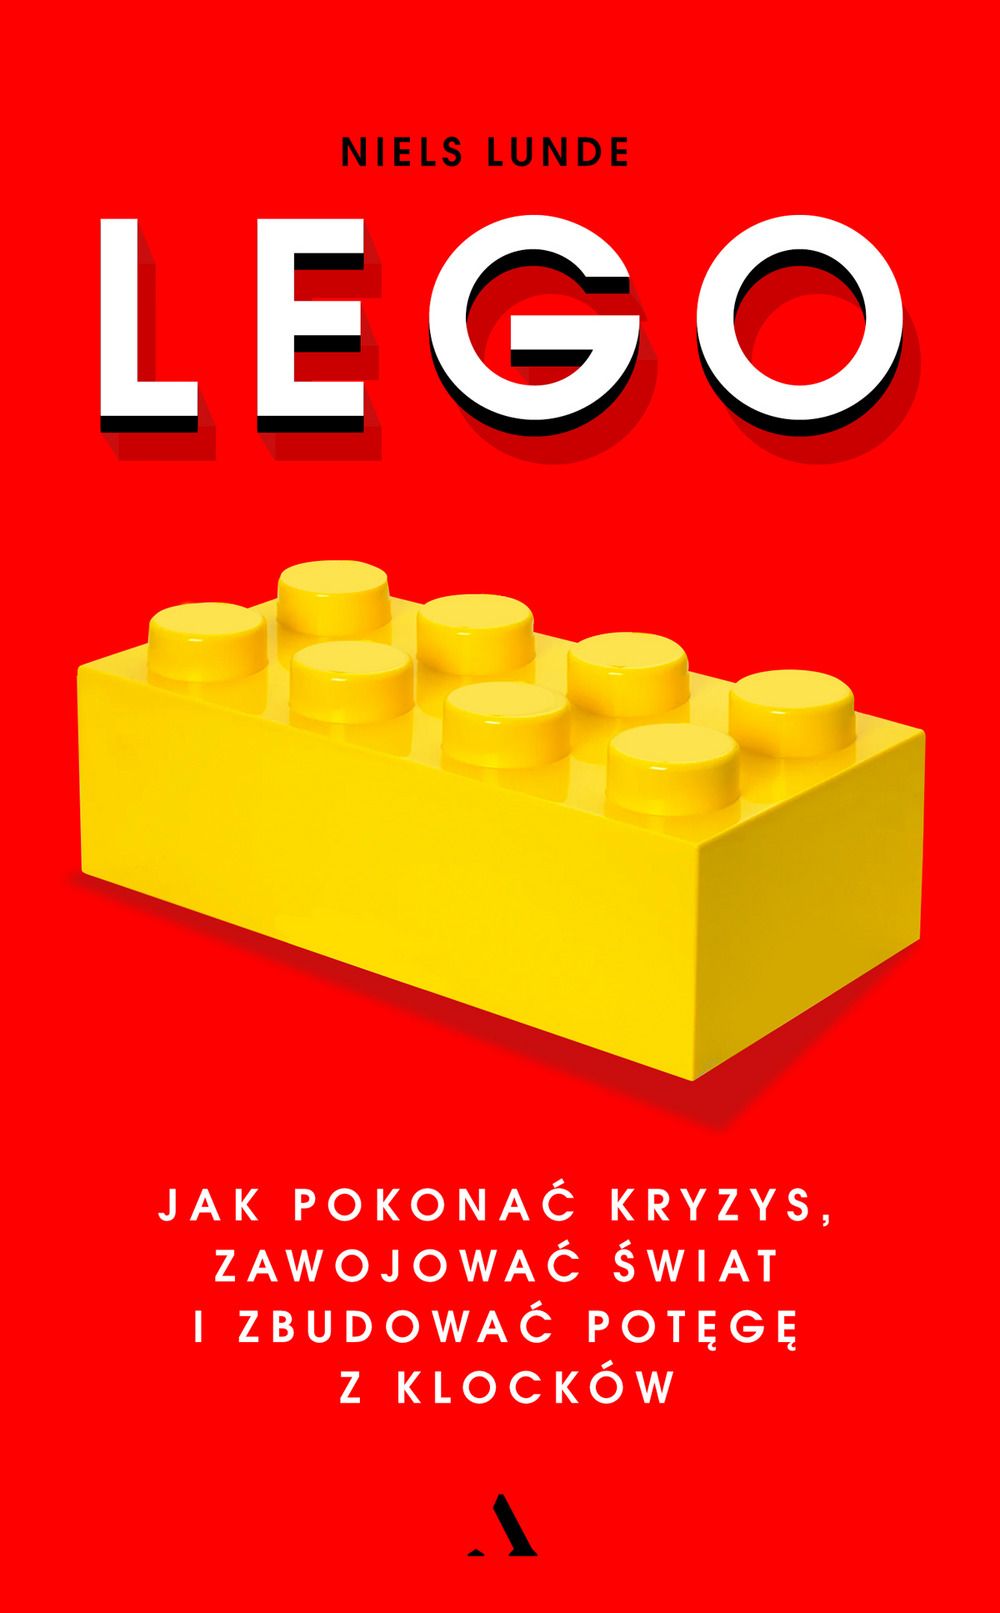 Nie poprawiać dobrego produktu, czyli pouczająca historia Lego